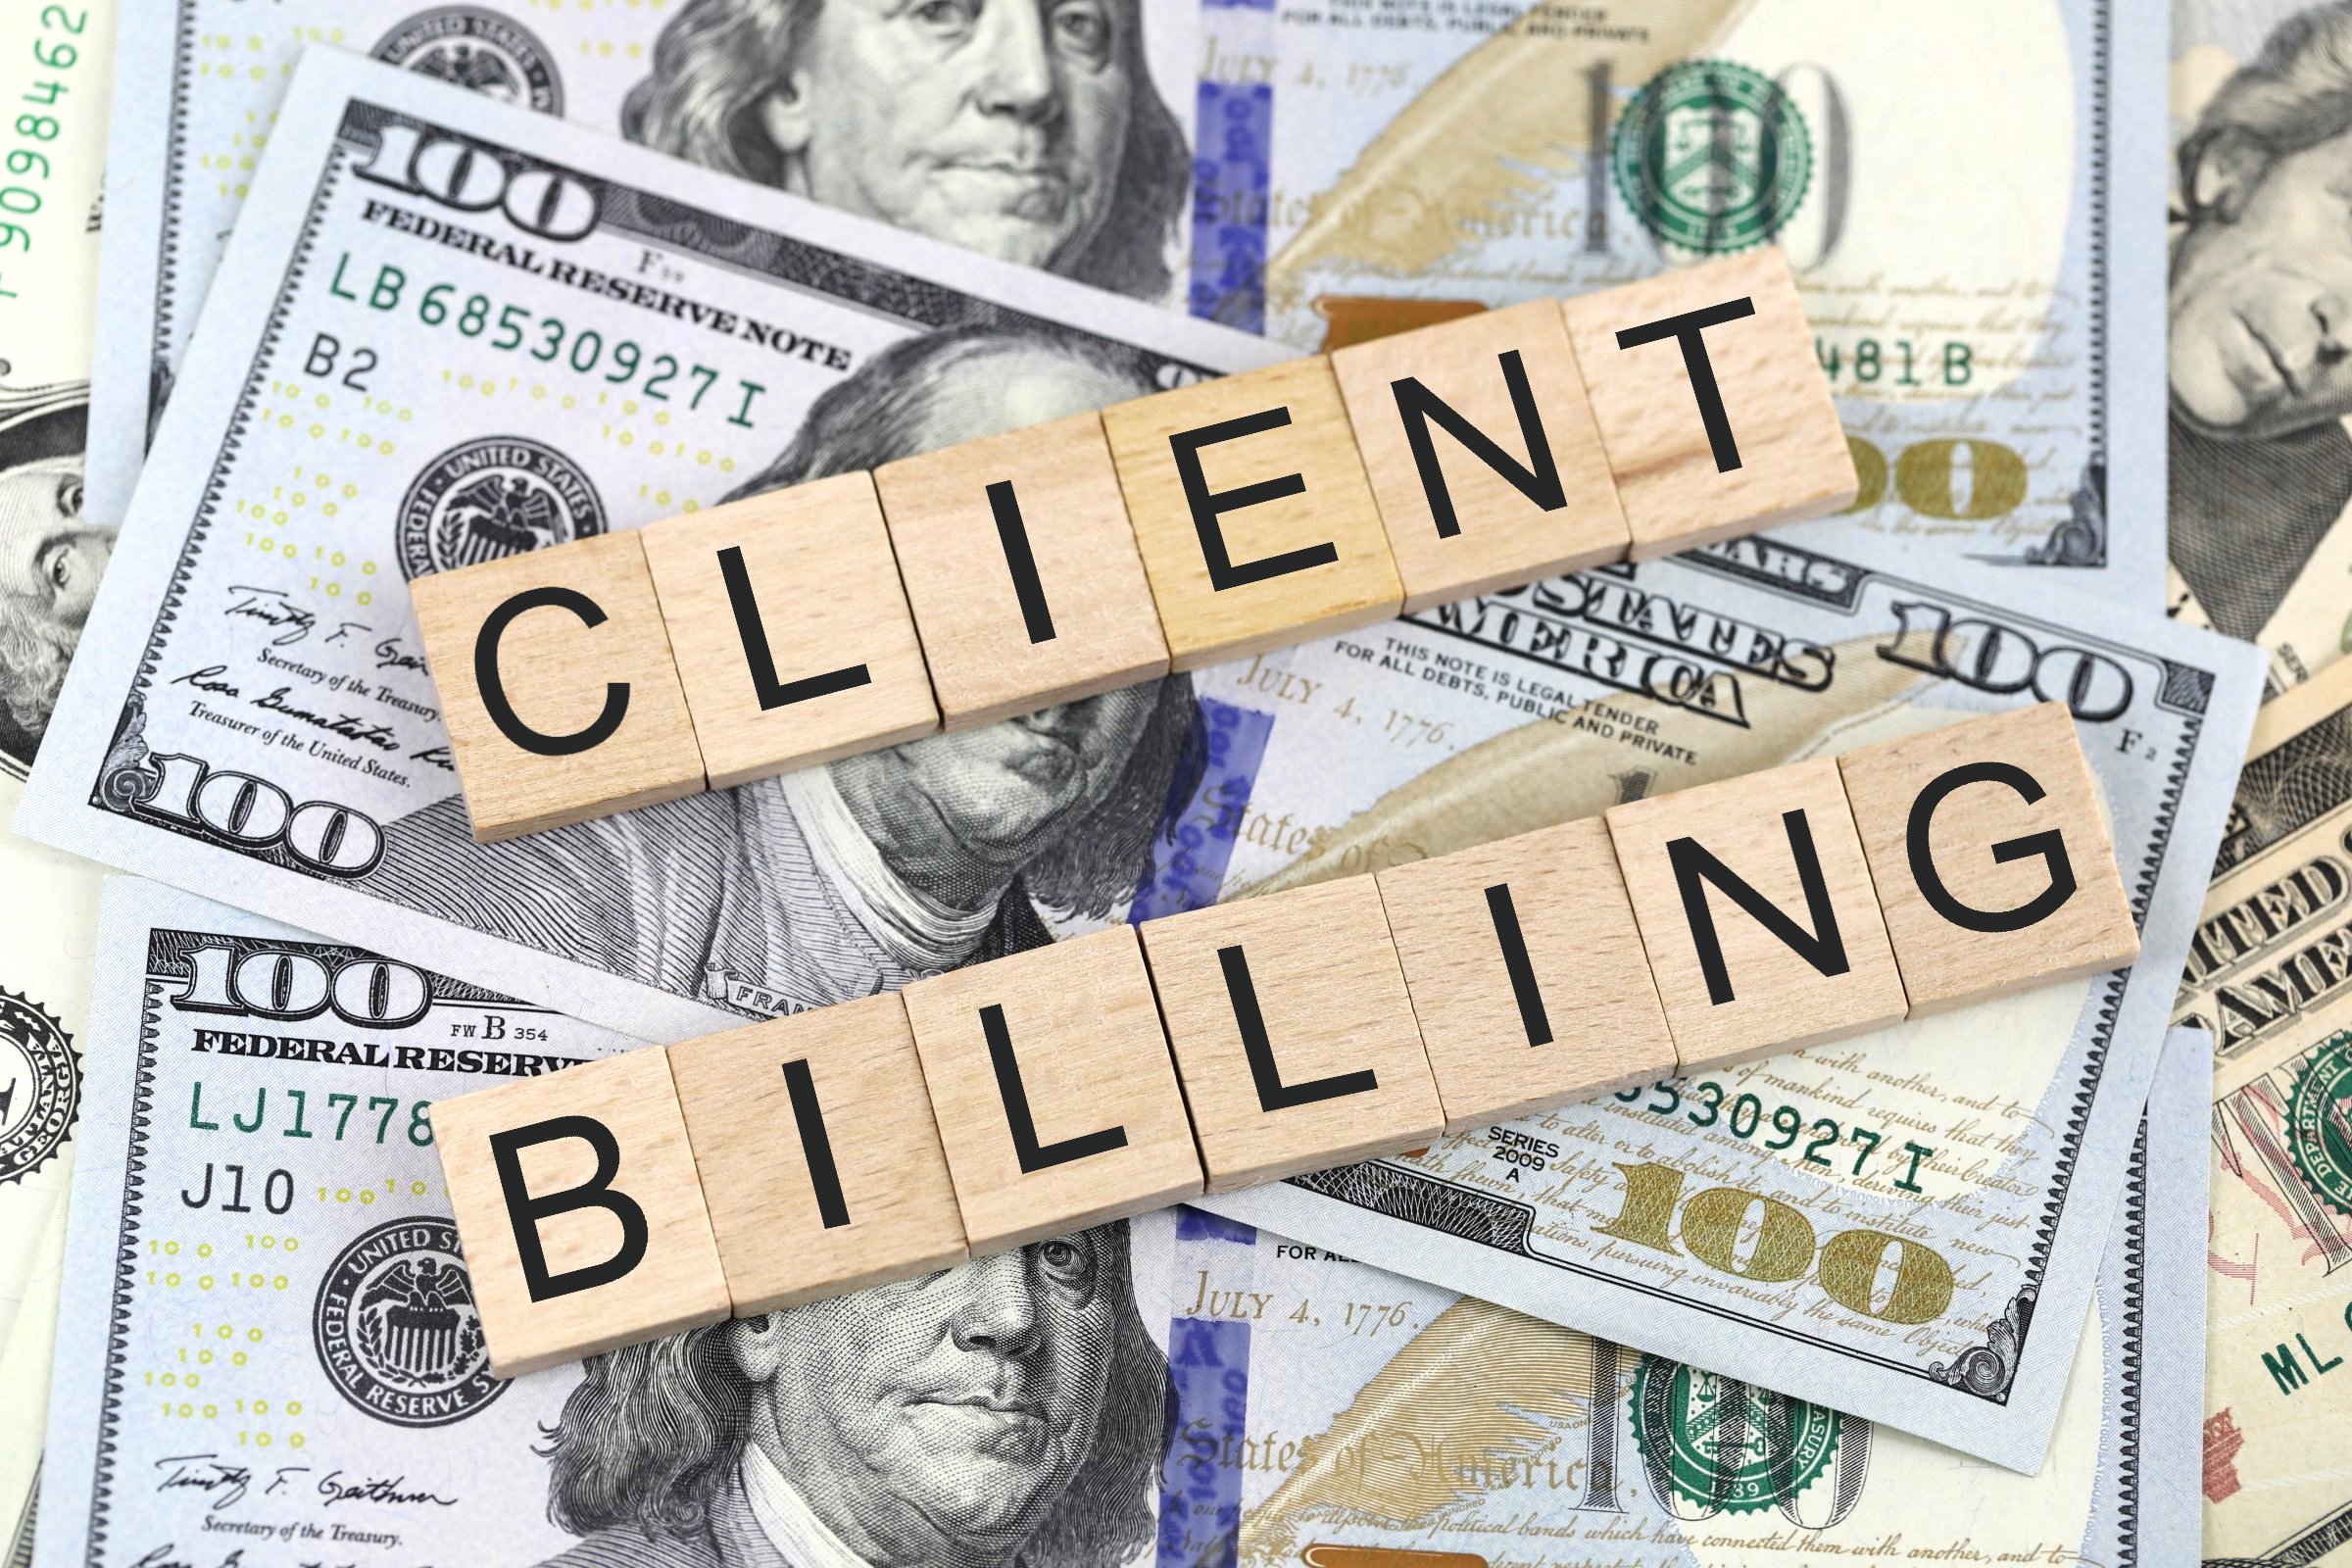 client billing